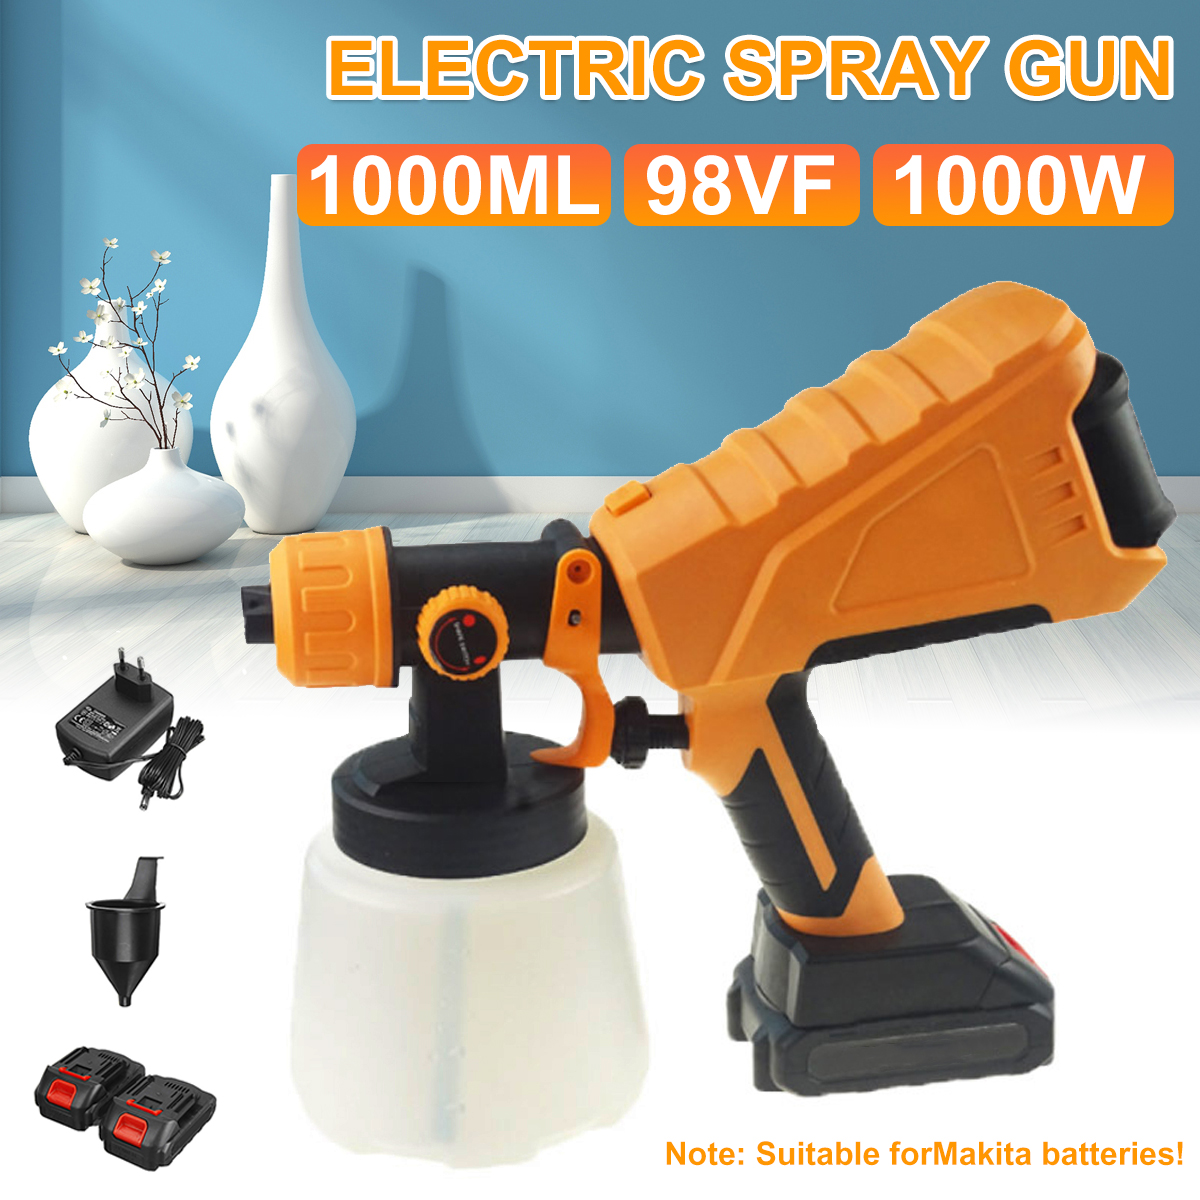 1000ml-Paint-Spray-Guns-Cordless-Electric-Sprayer-Painting-Spraying-Tool-Fit-Makita-EU-Plug-1888003-1